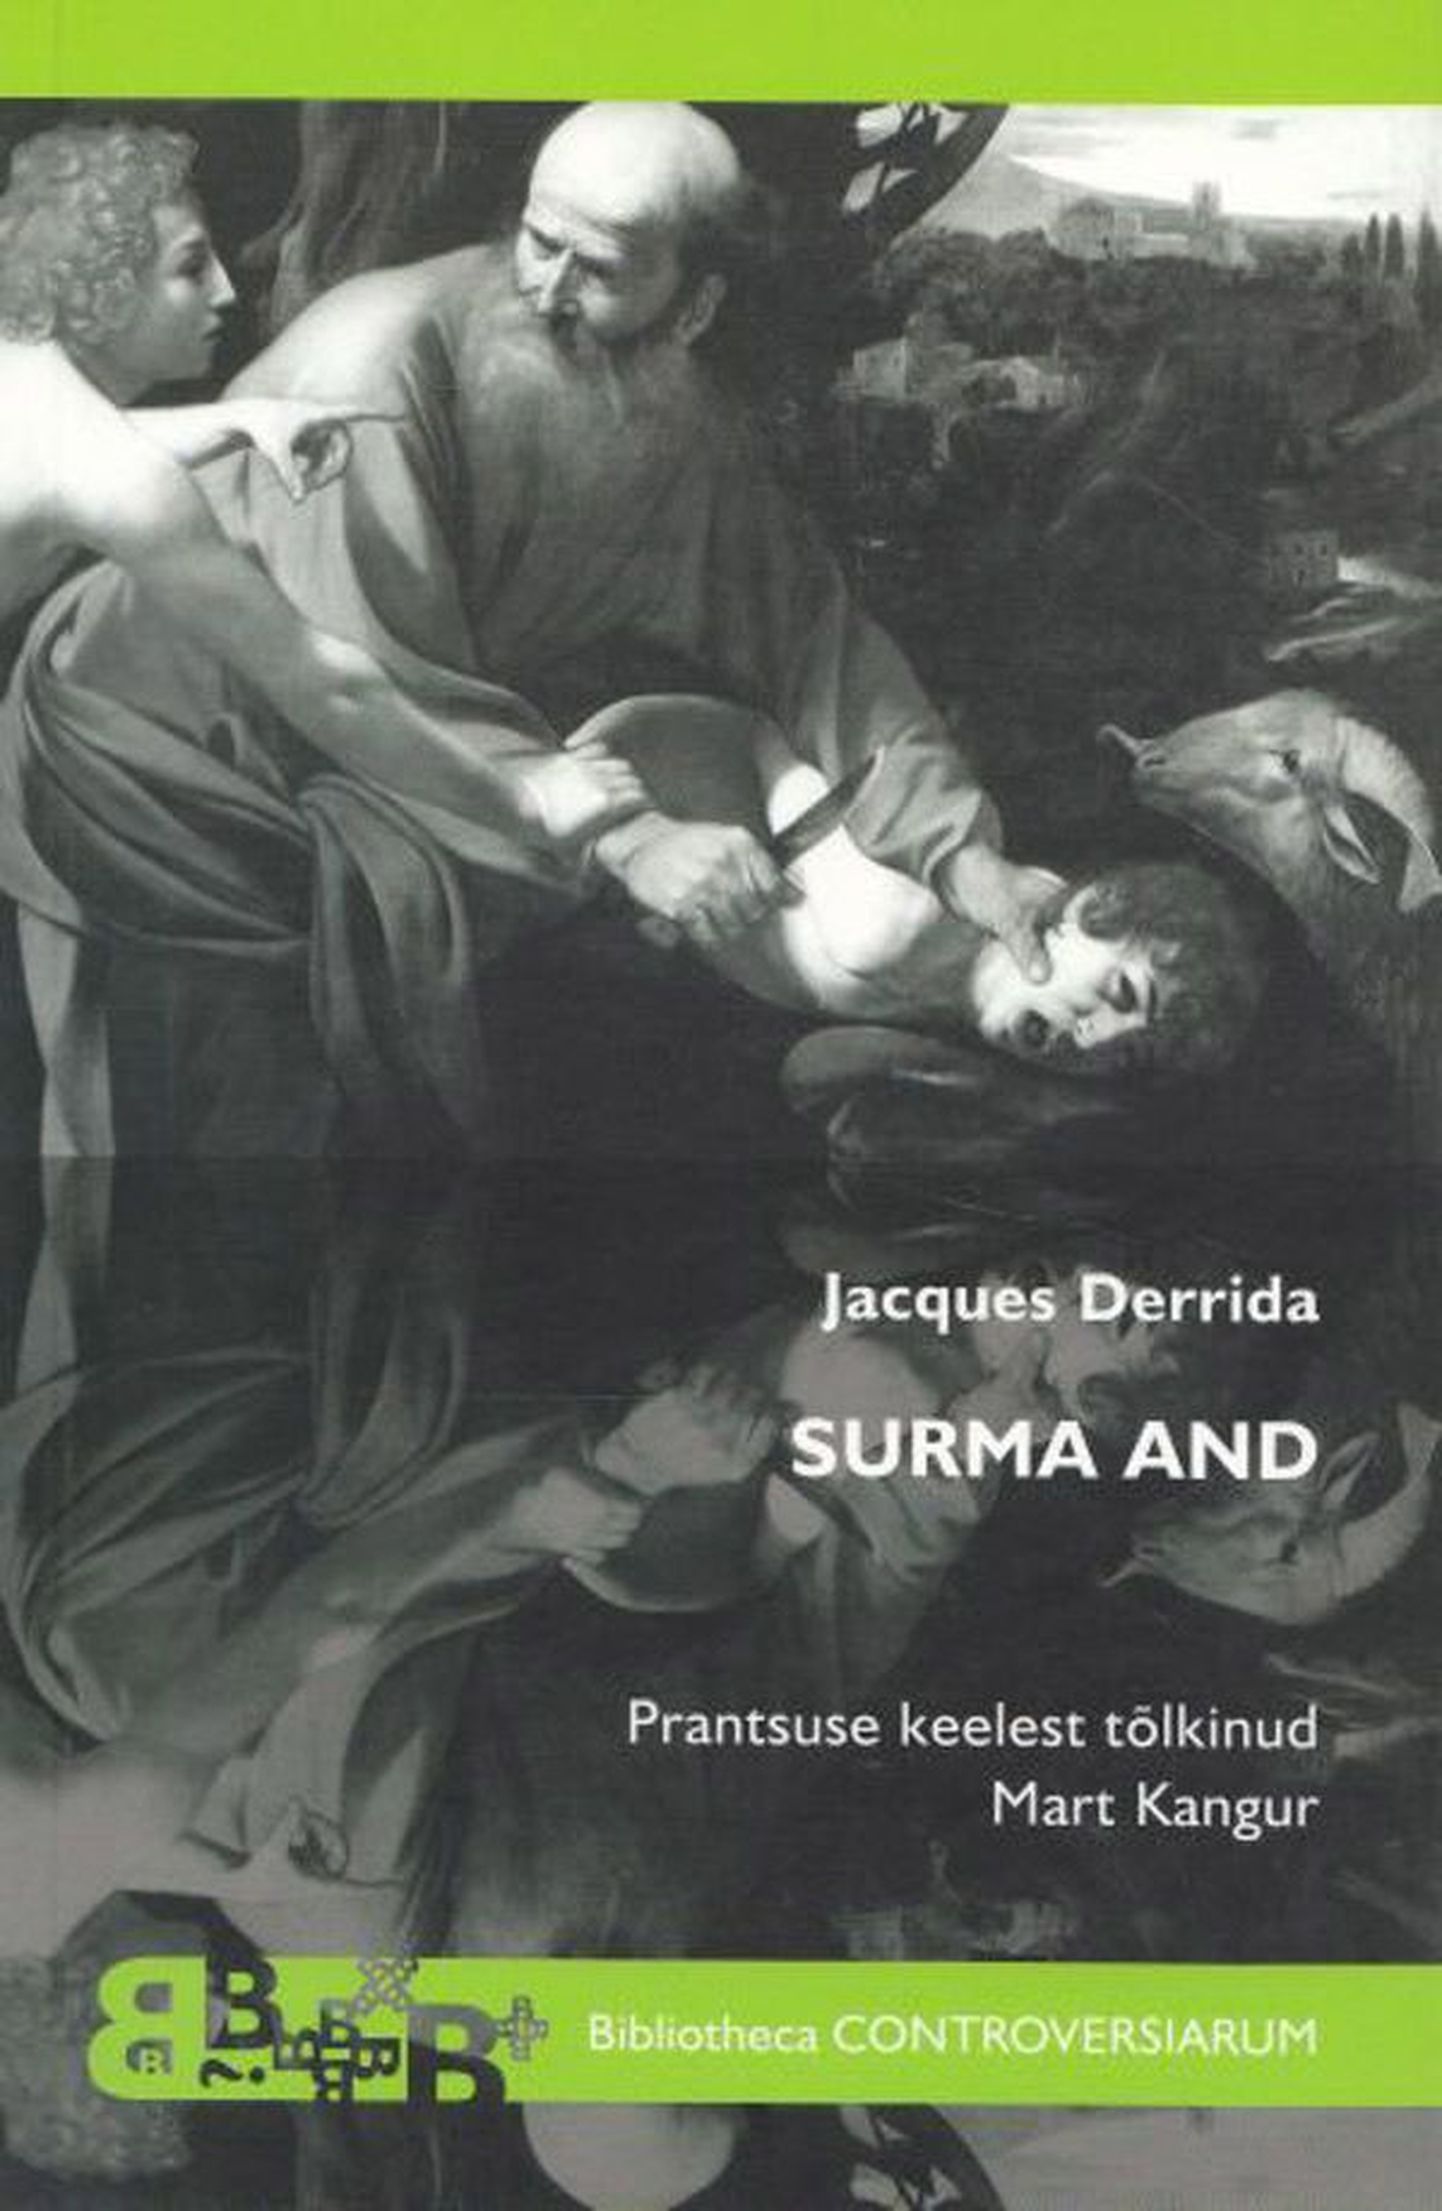 Raamat 
Jacques Derrida
«Surma and» 
Tõlkija Mart Kangur 
TLÜ Kirjastus 2012
237 lk